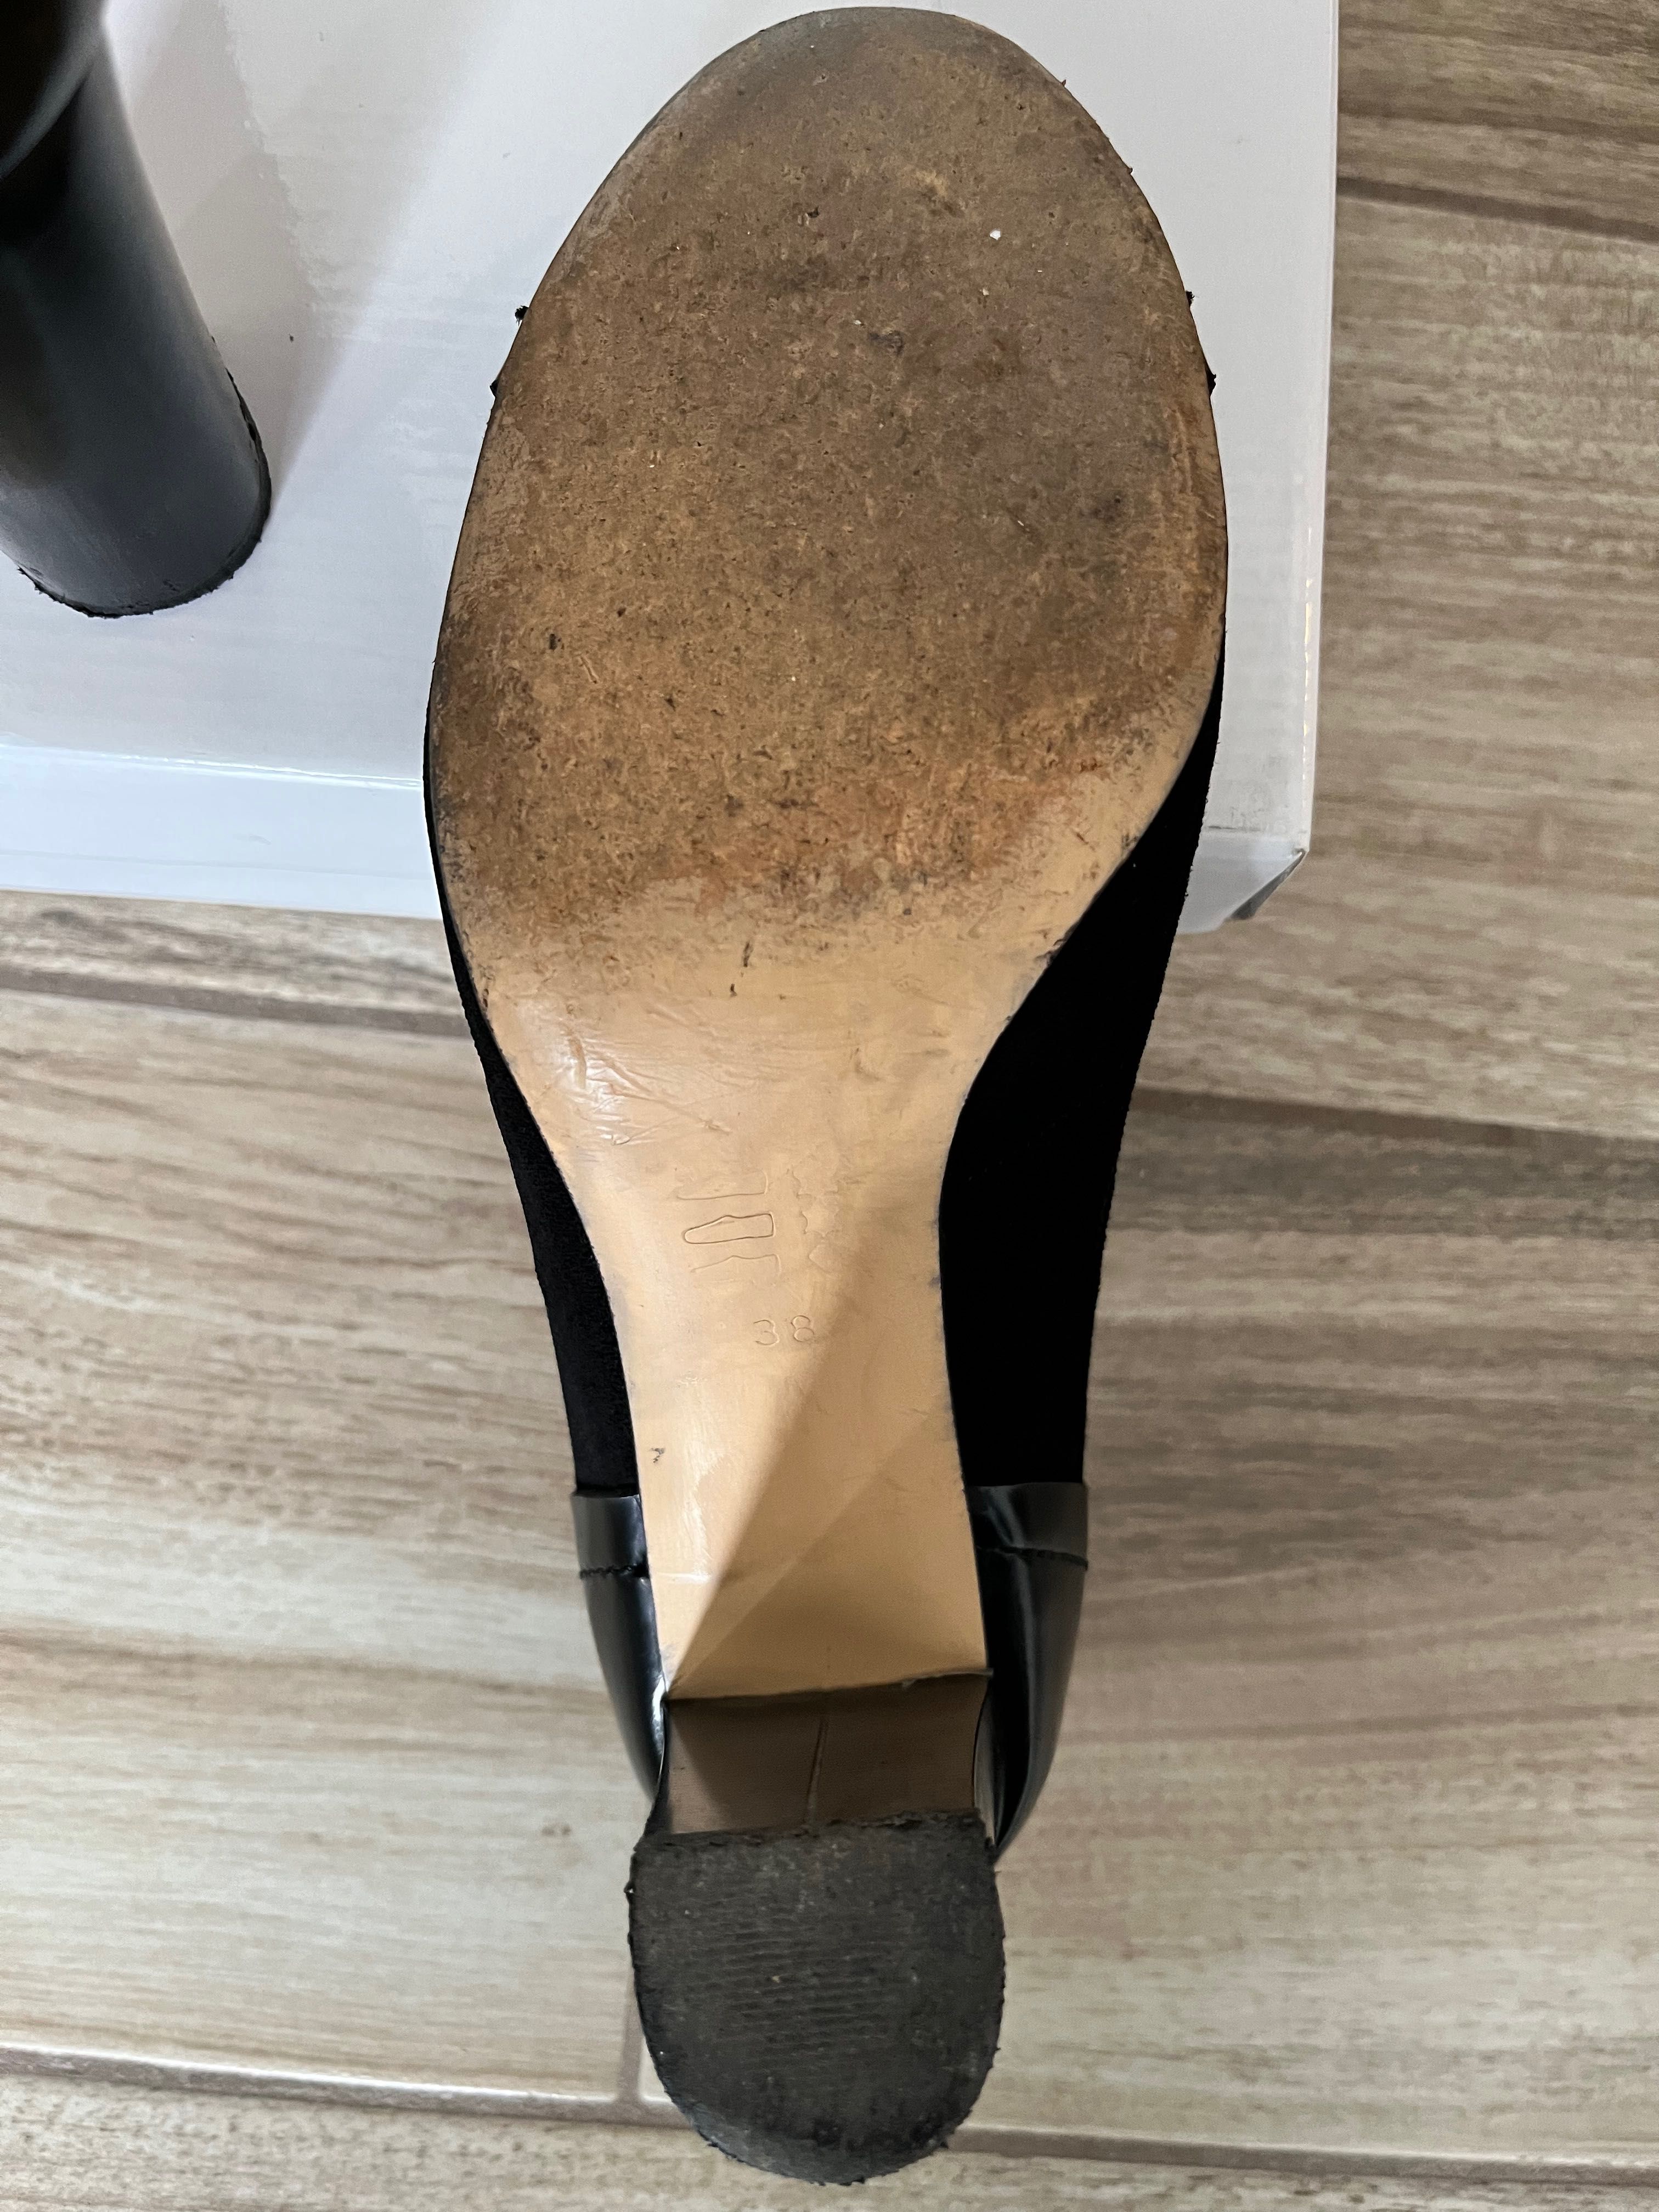 Дамски обувки Gi Anni размер 38 черни велур и кожа